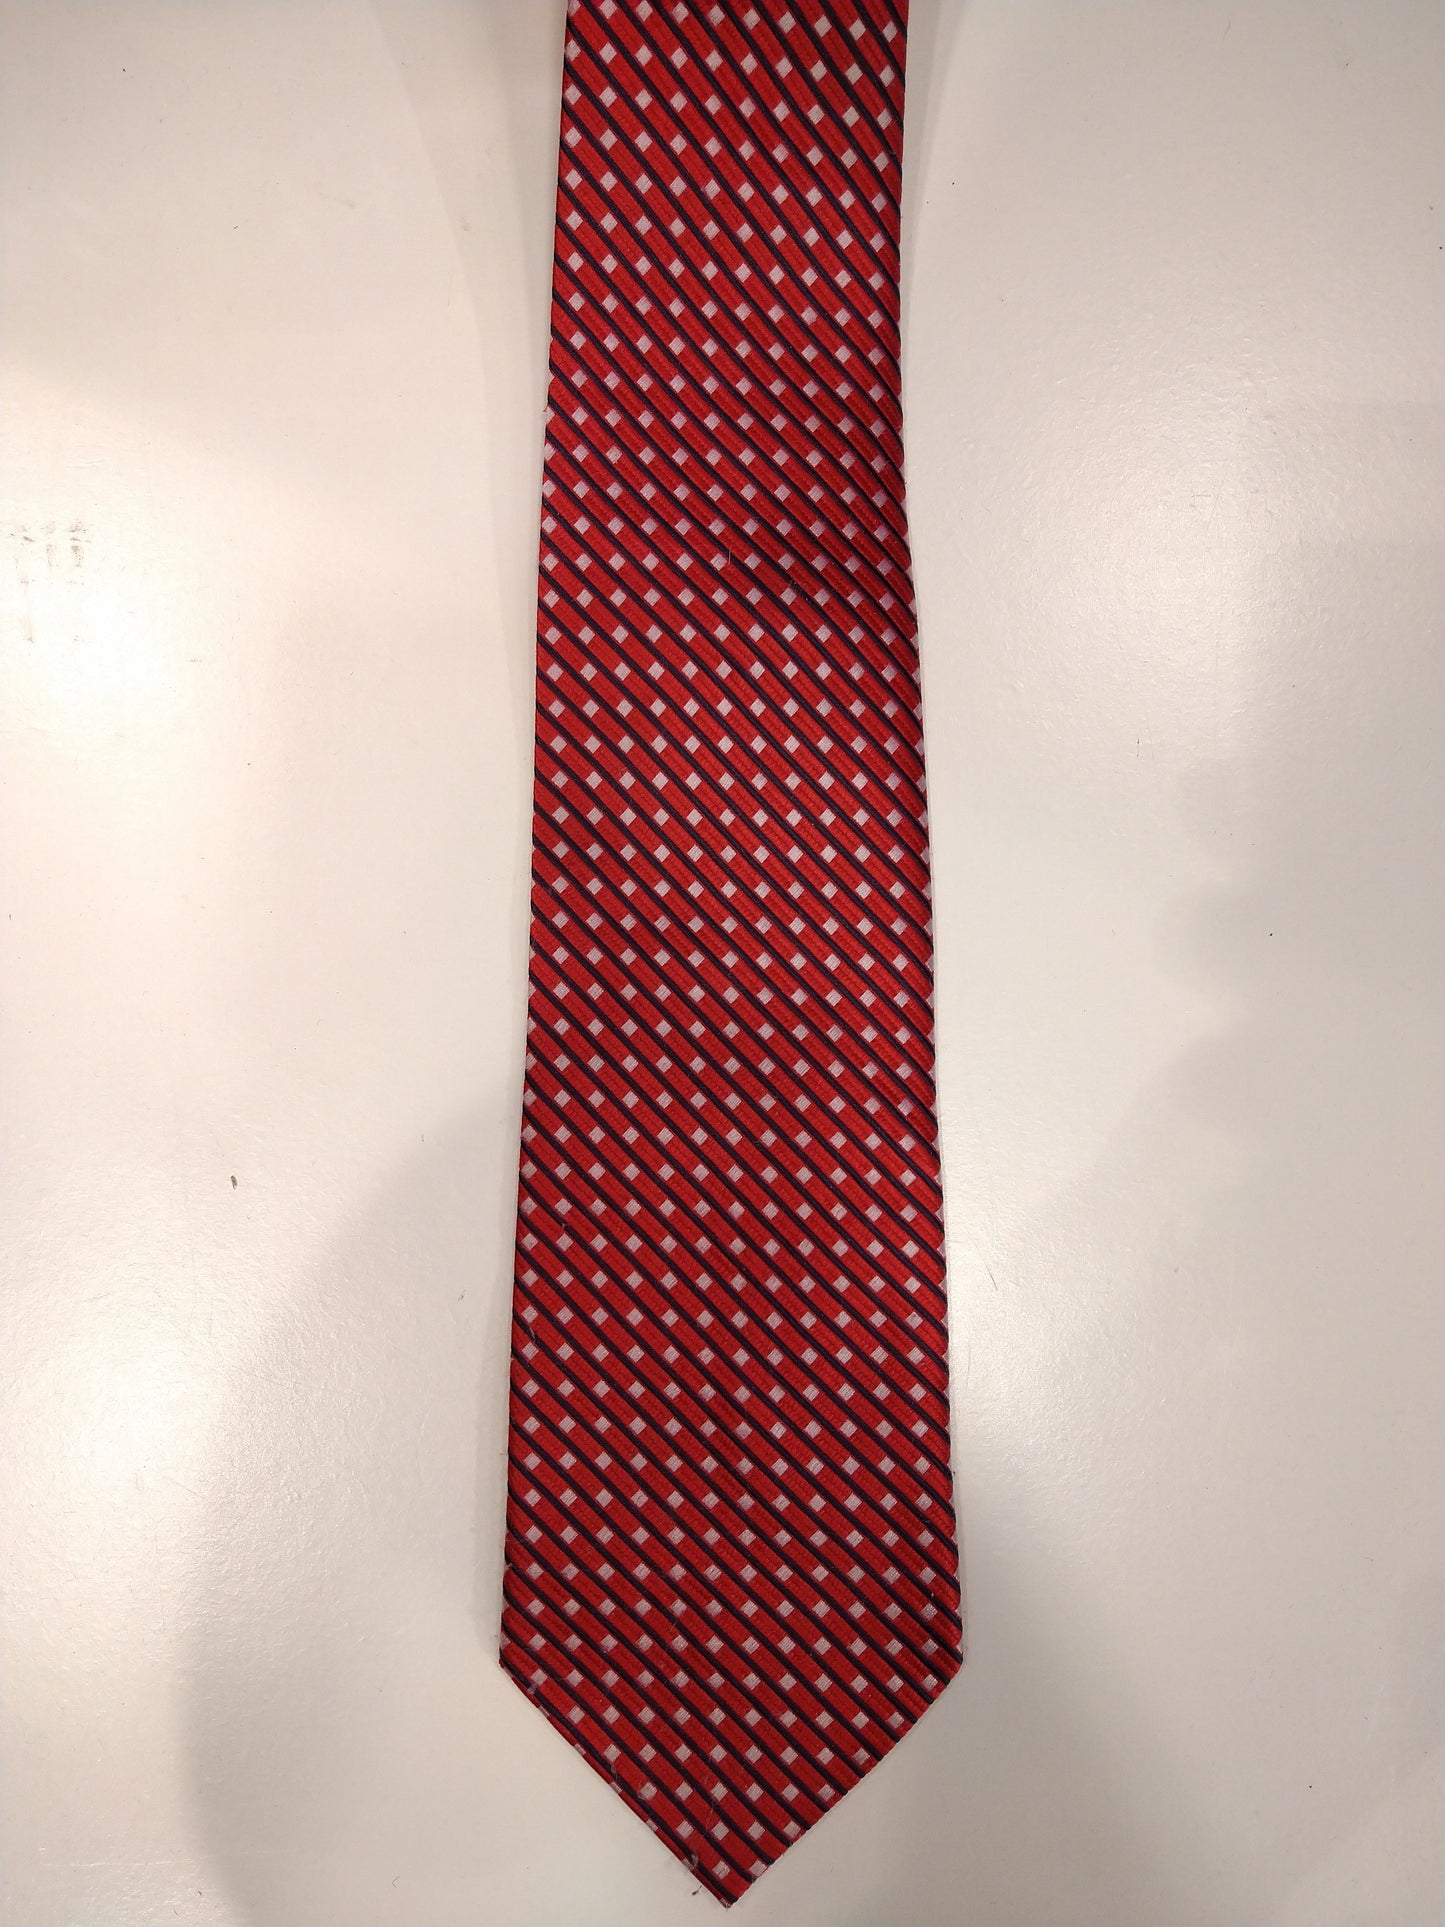 Cravate en soie vintage. Rouge avec motif de boules blanches.